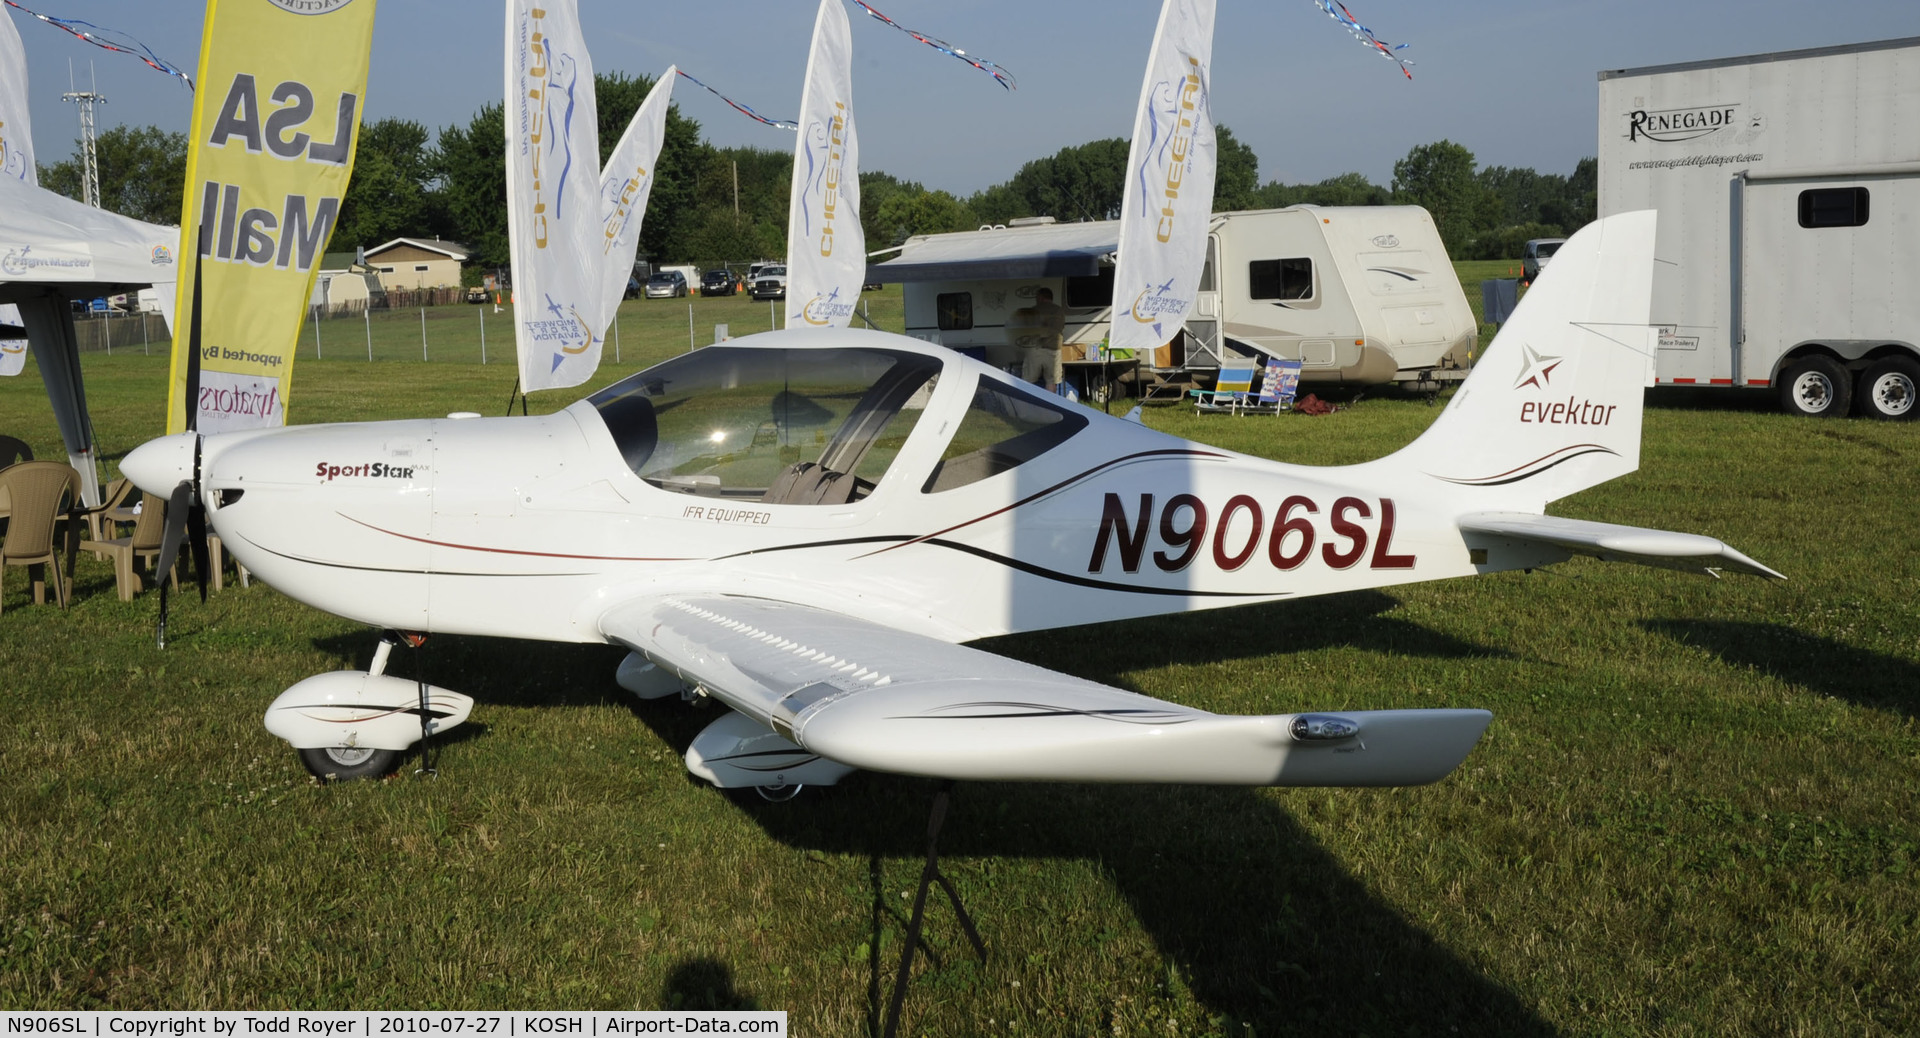 N906SL, 2009 Evektor-Aerotechnik Sportstar Max C/N 20091202, EAA AIRVENTURE 2010